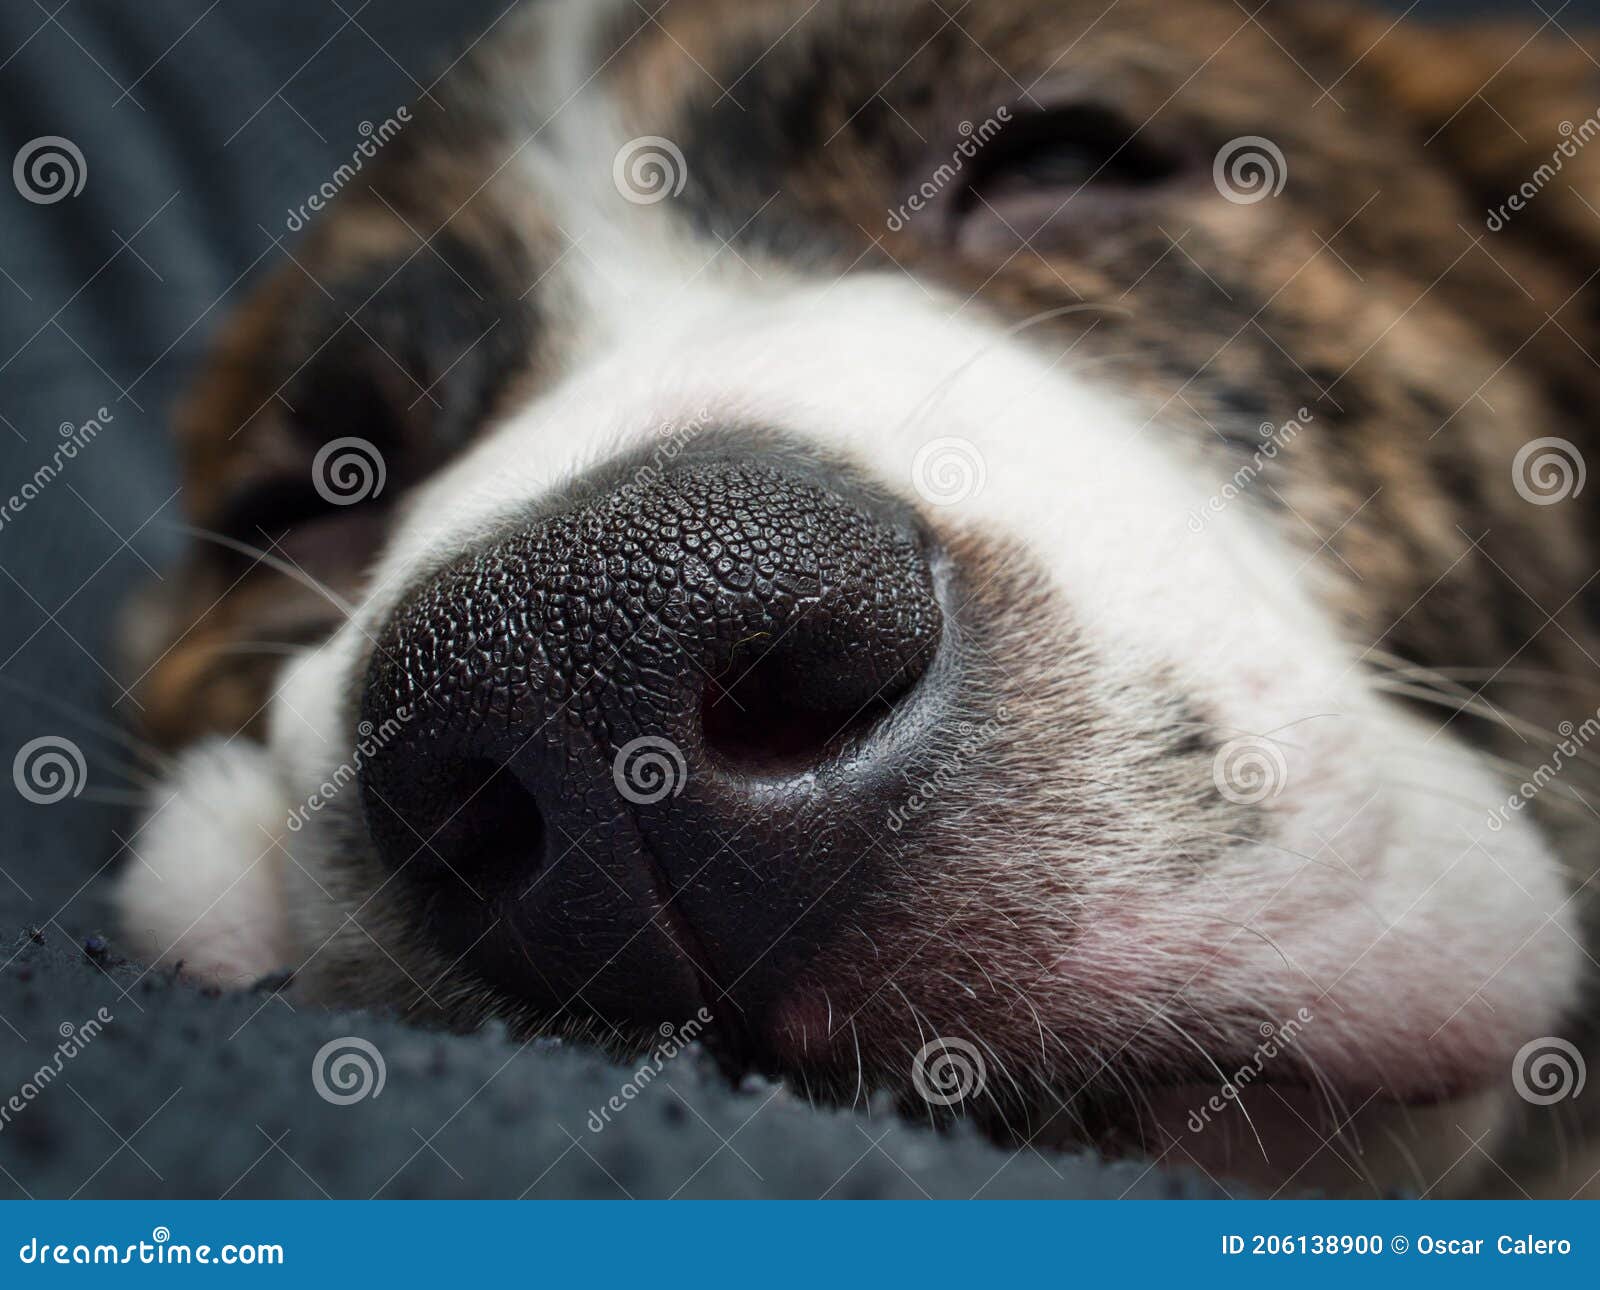 高清特写狗的鼻子上面的纹路清晰可见动物素材设计